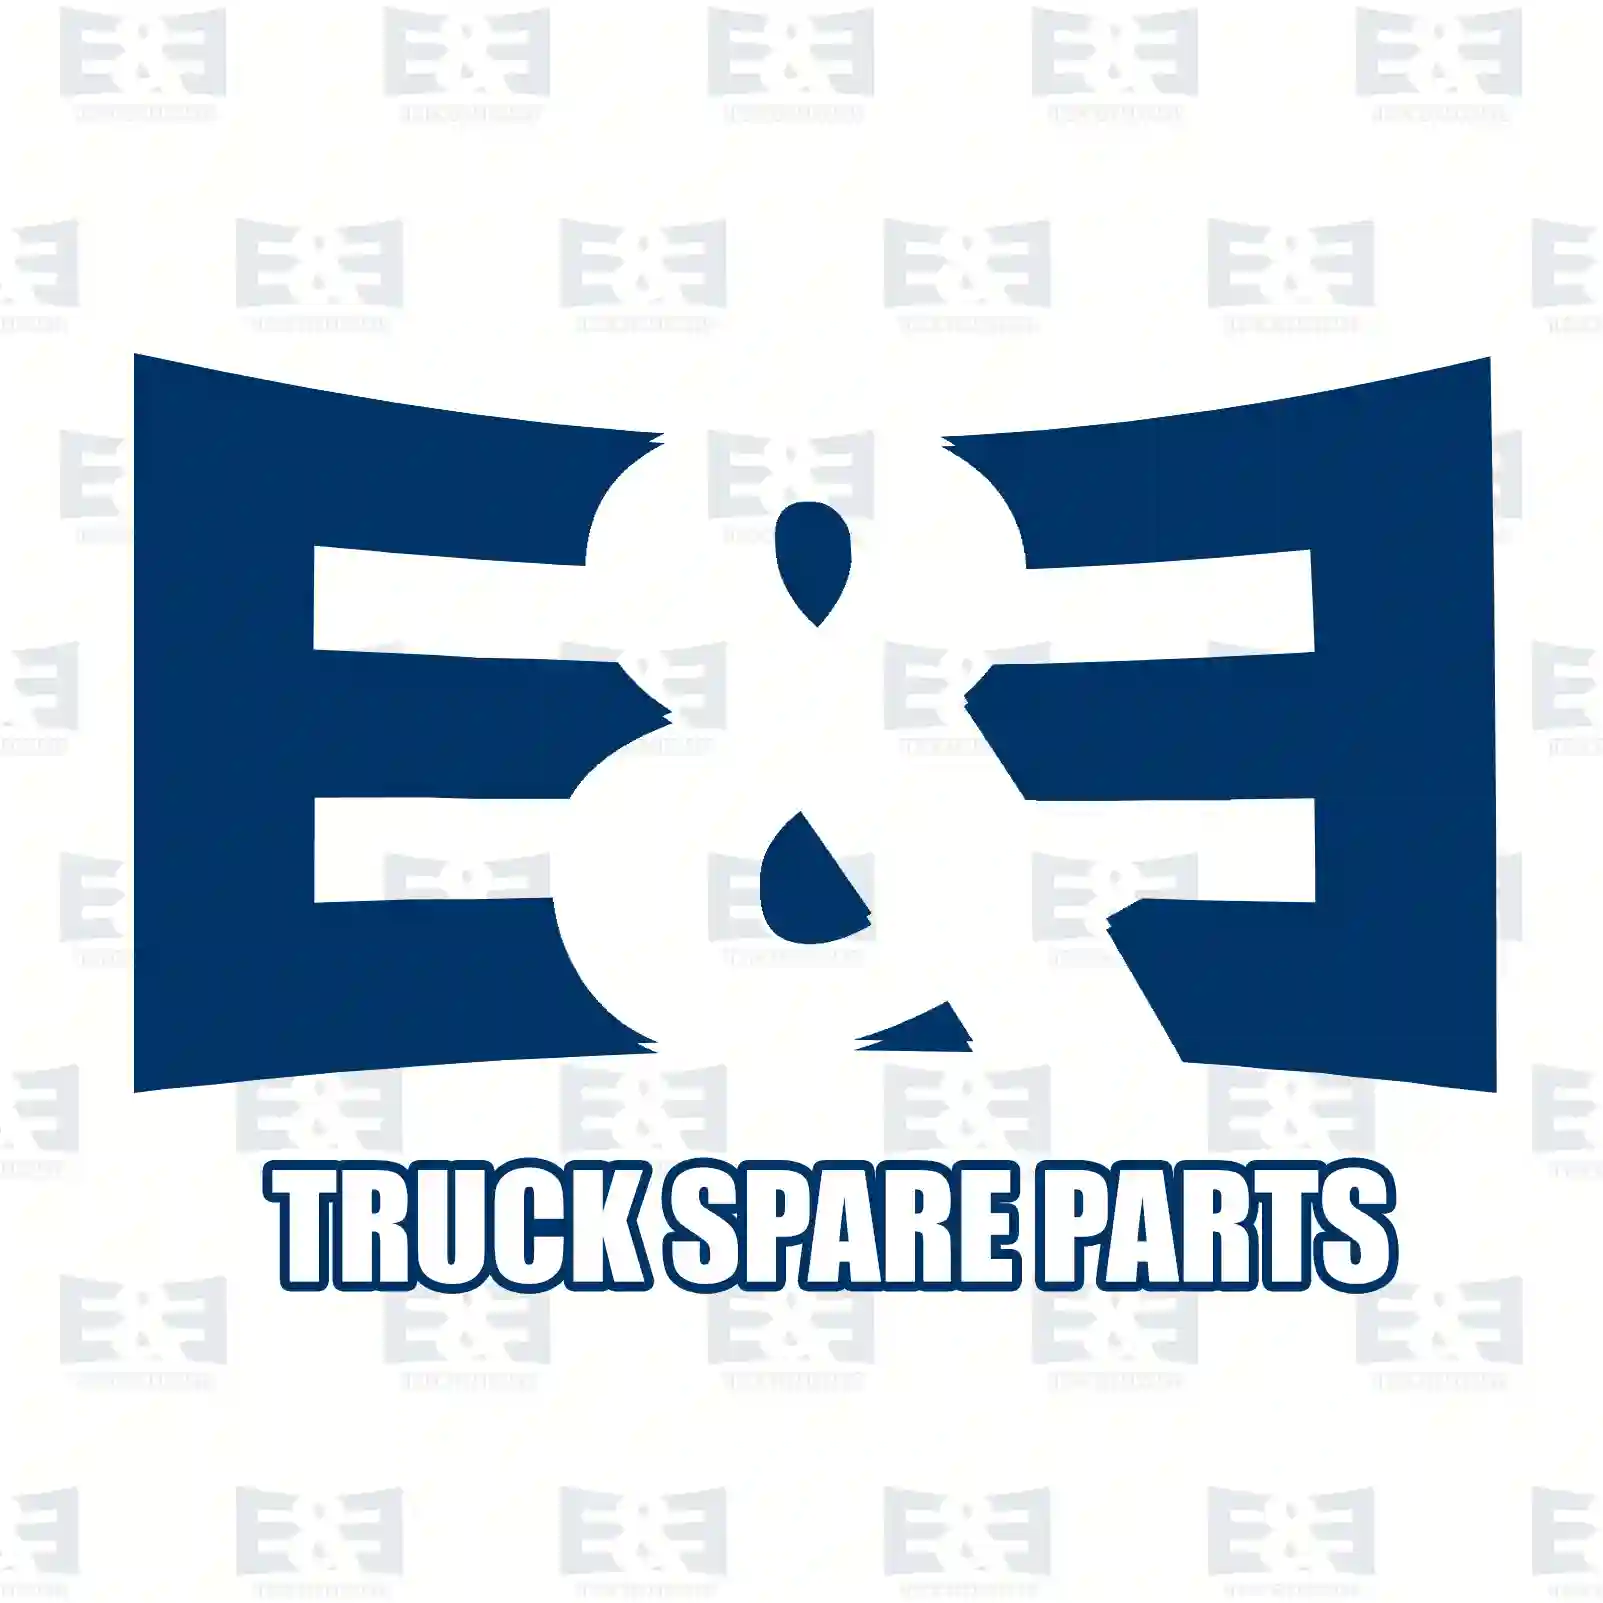 Screw, 2E2285967, 000000005578, 910105020031, , , ||  2E2285967 E&E Truck Spare Parts | Truck Spare Parts, Auotomotive Spare Parts Screw, 2E2285967, 000000005578, 910105020031, , , ||  2E2285967 E&E Truck Spare Parts | Truck Spare Parts, Auotomotive Spare Parts